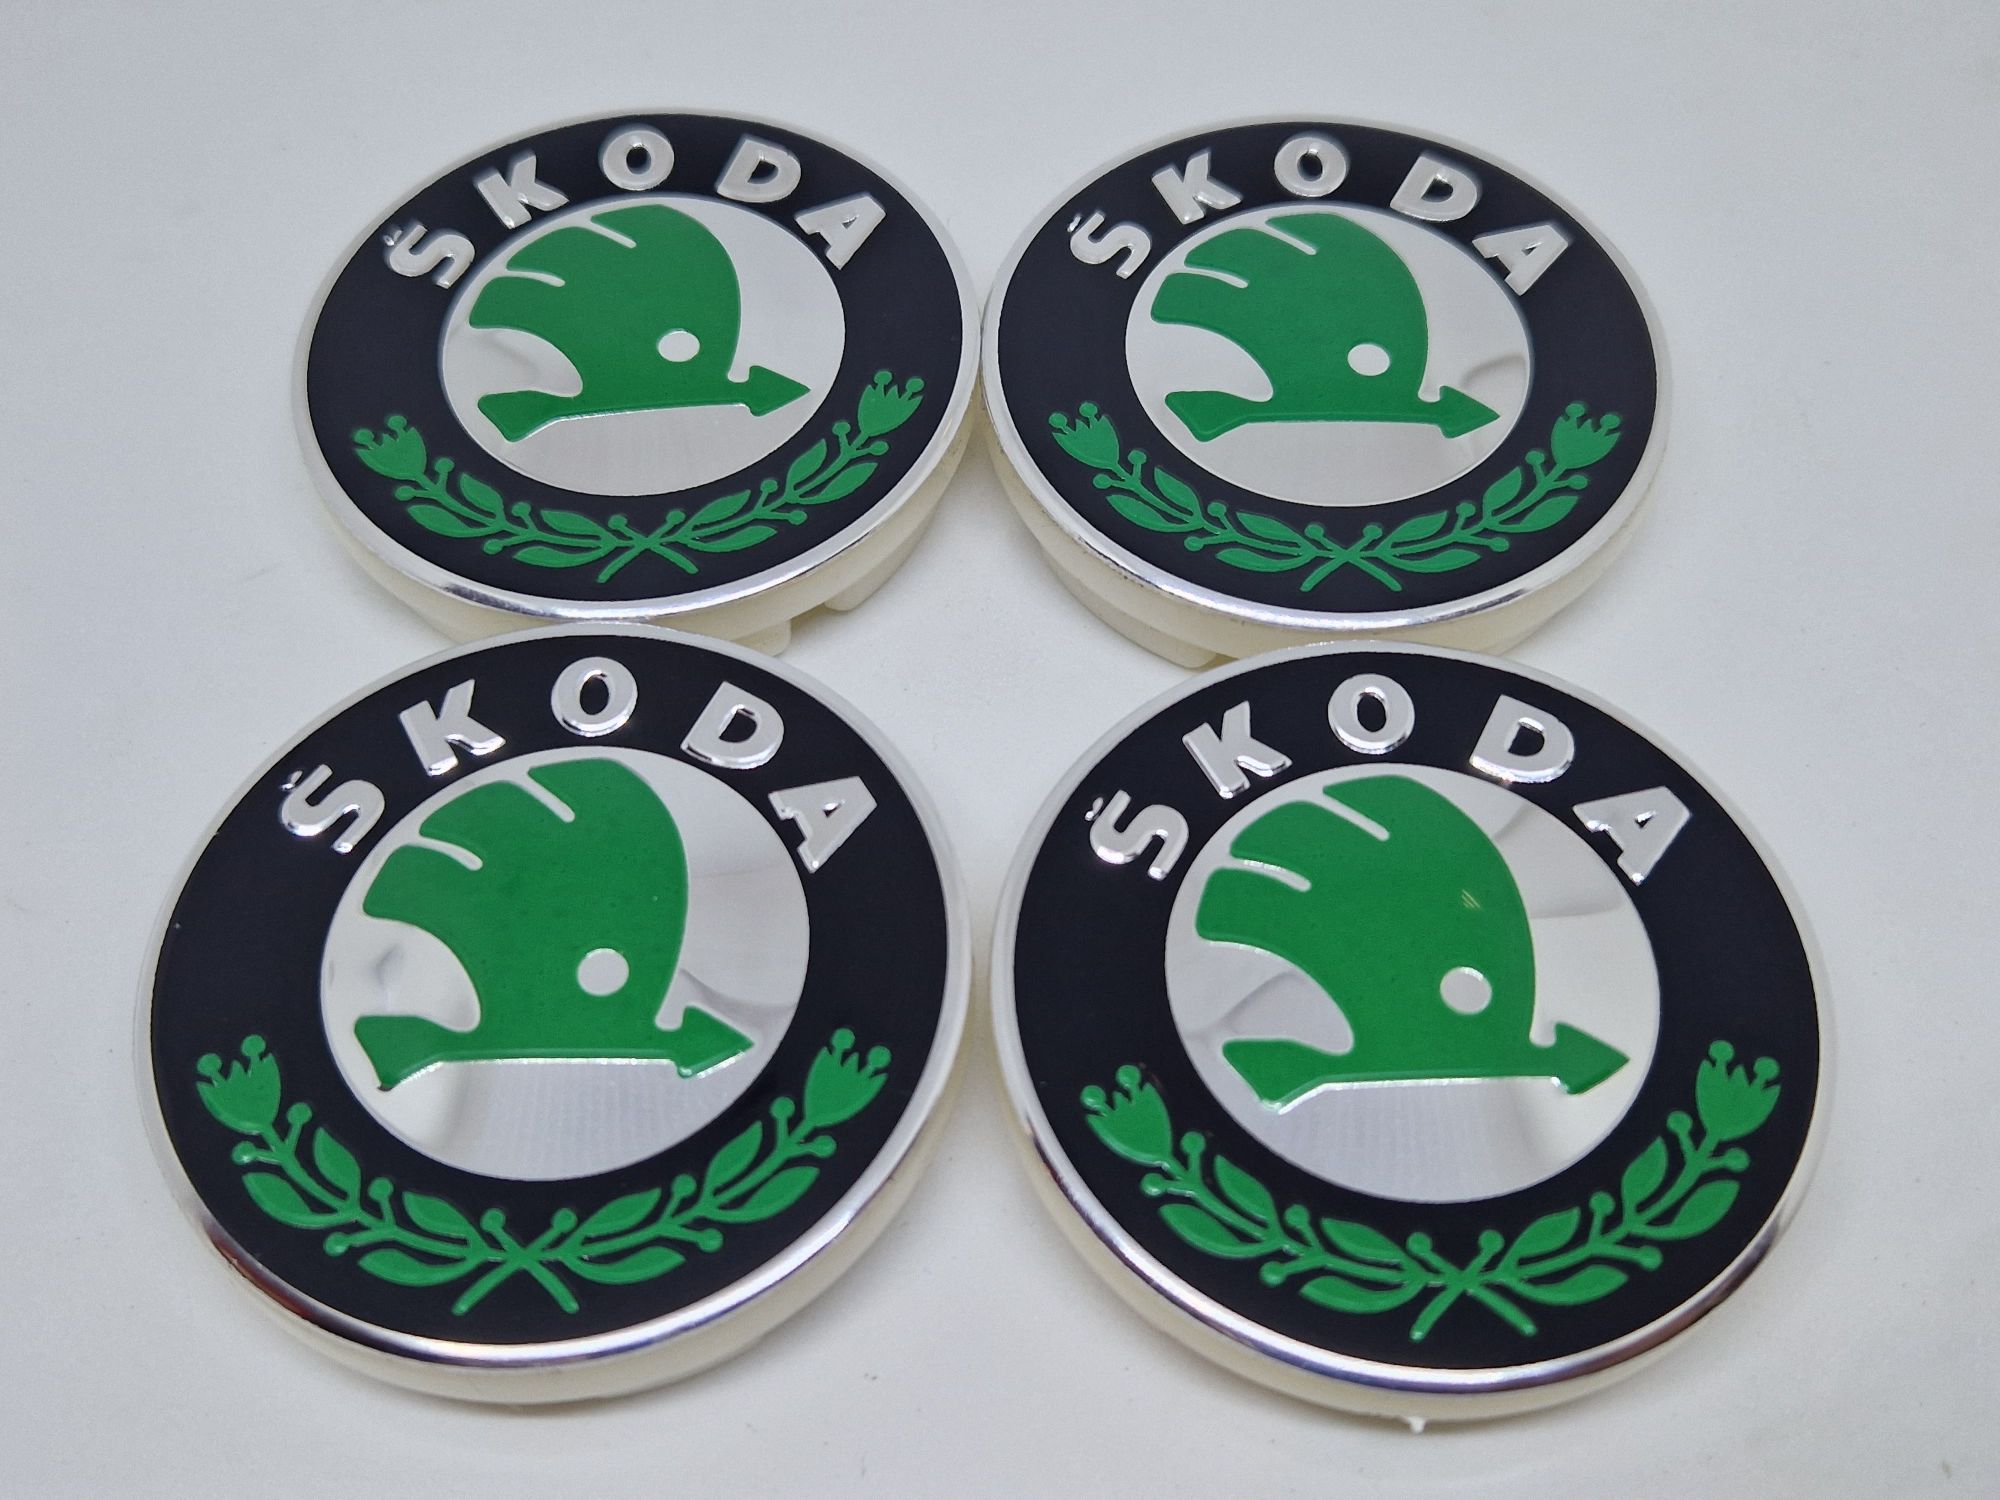 Ковпачки Skoda/Лого/Колпачки в диски Шкода чорна/зелена Skoda